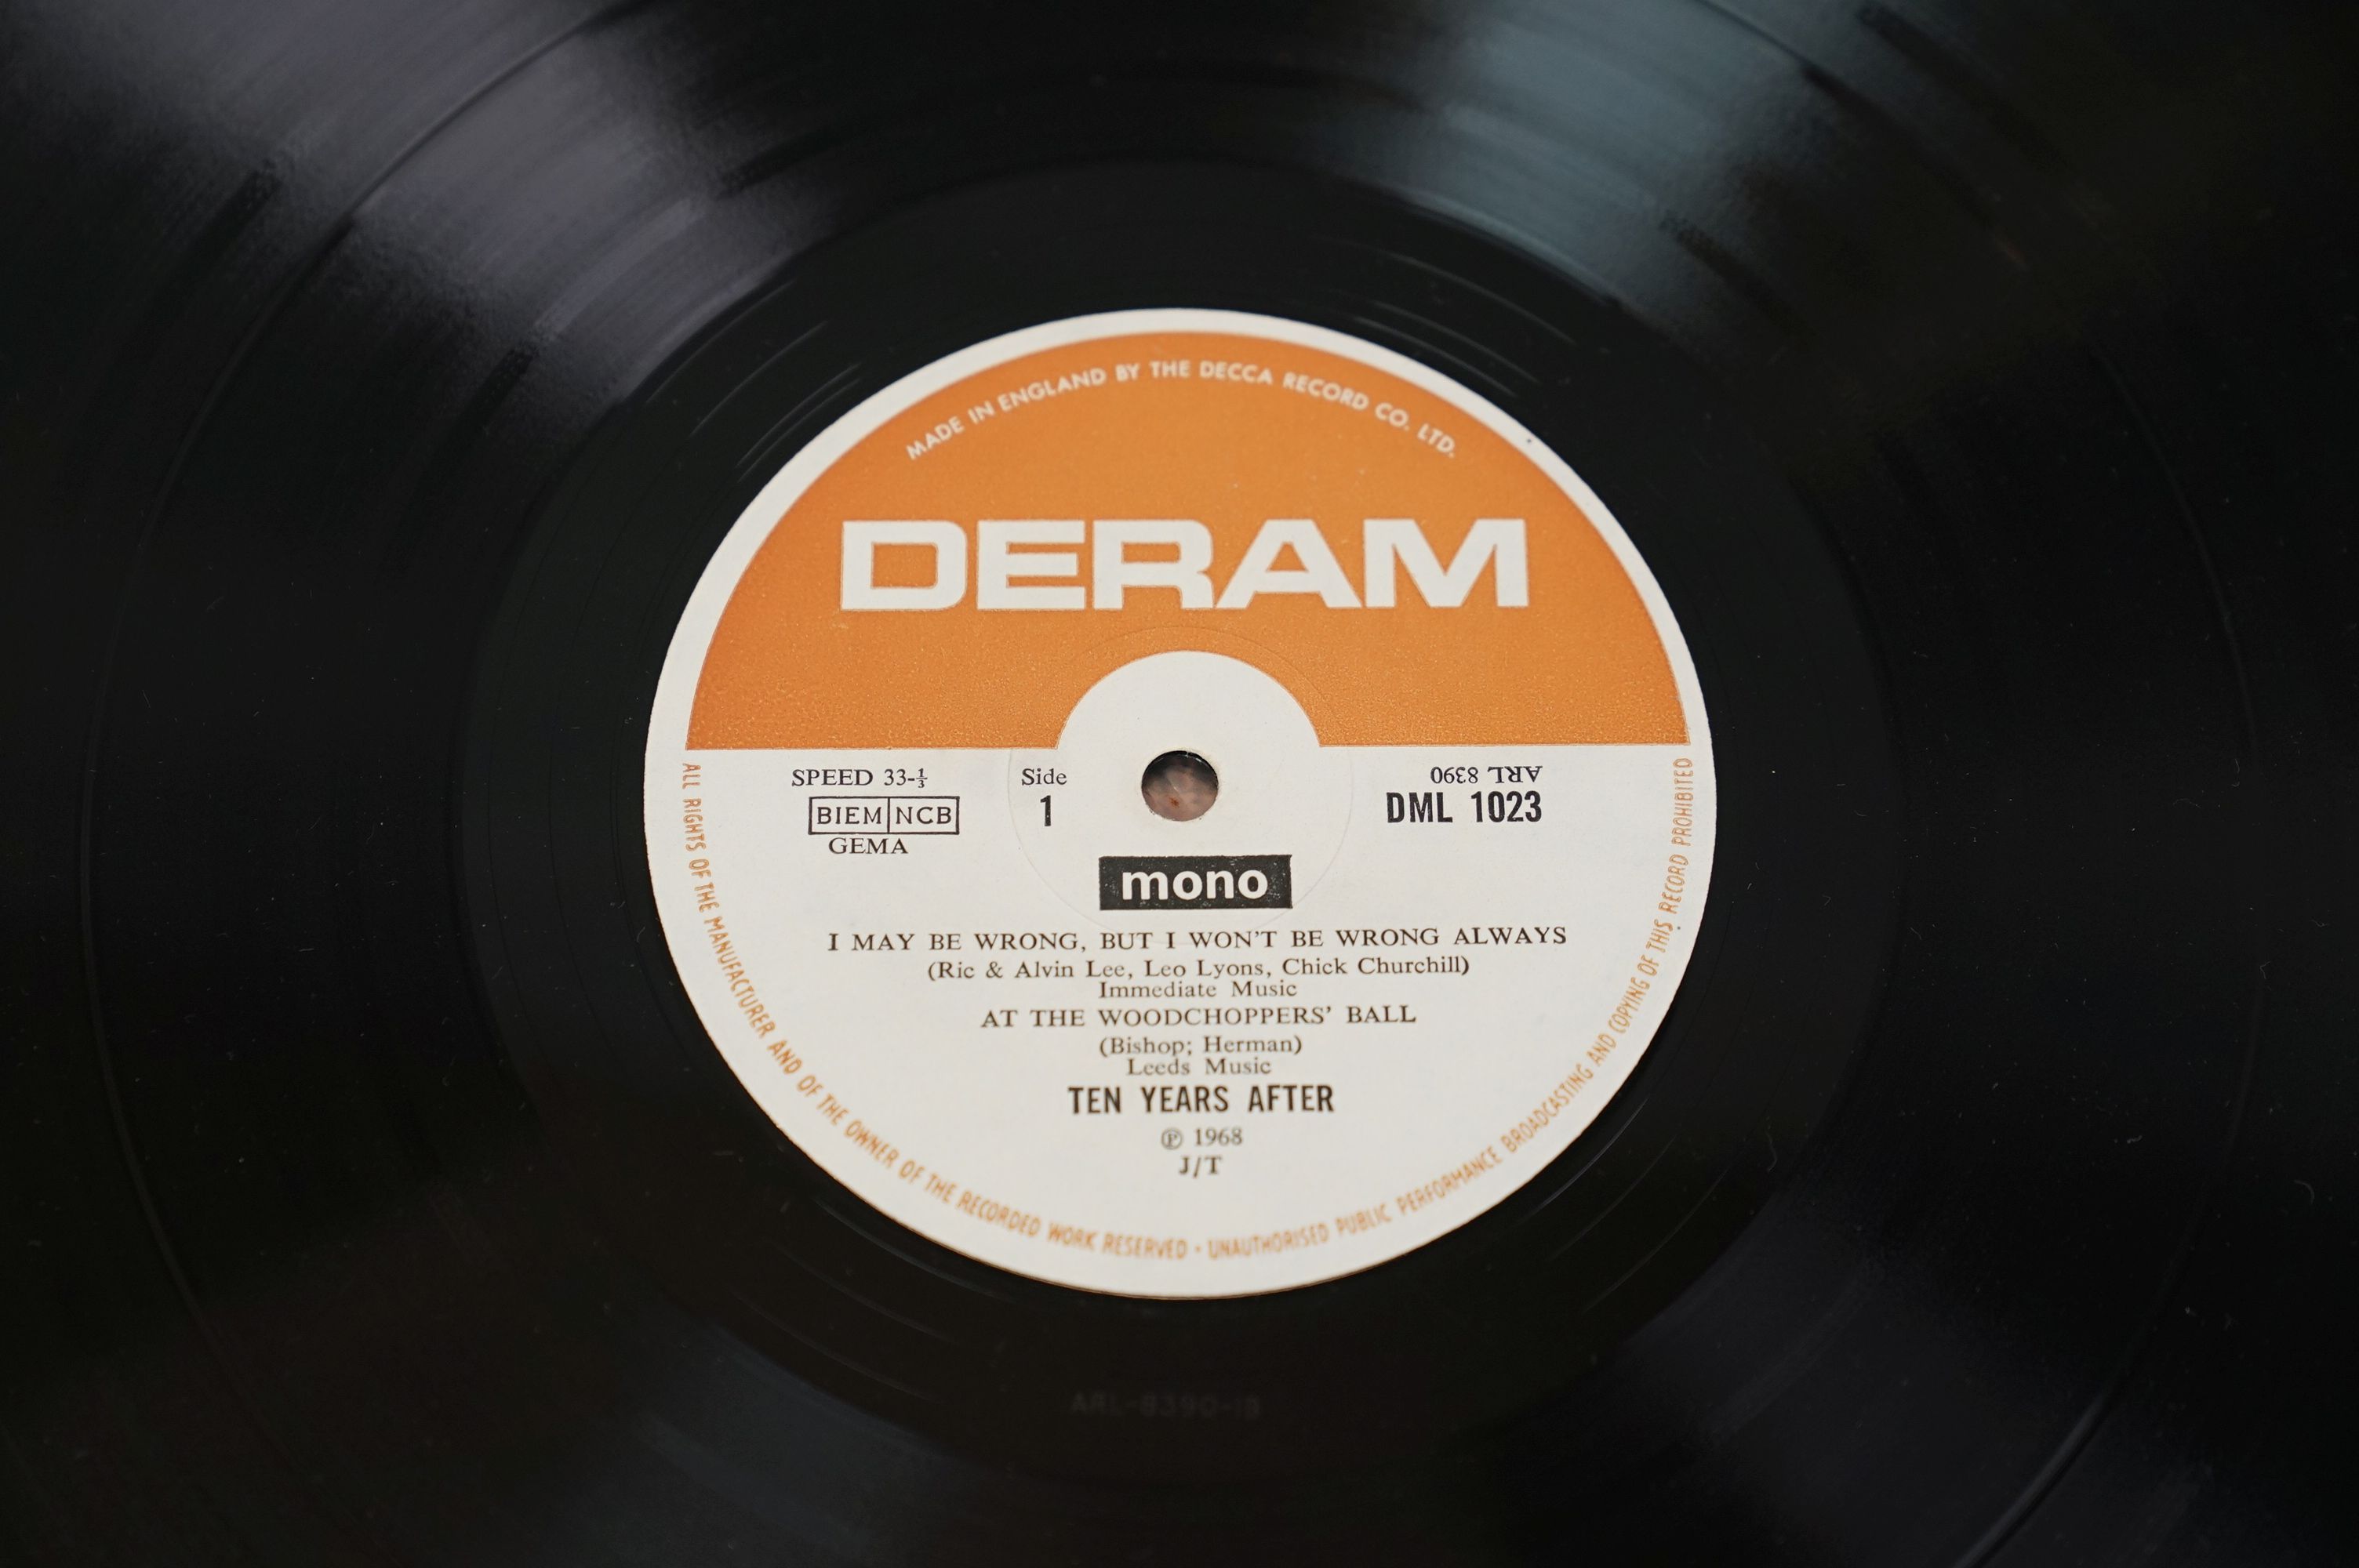 Vinyl - Ten Years After Undead LP on Deram mono DML1023 in ex - Image 7 of 7